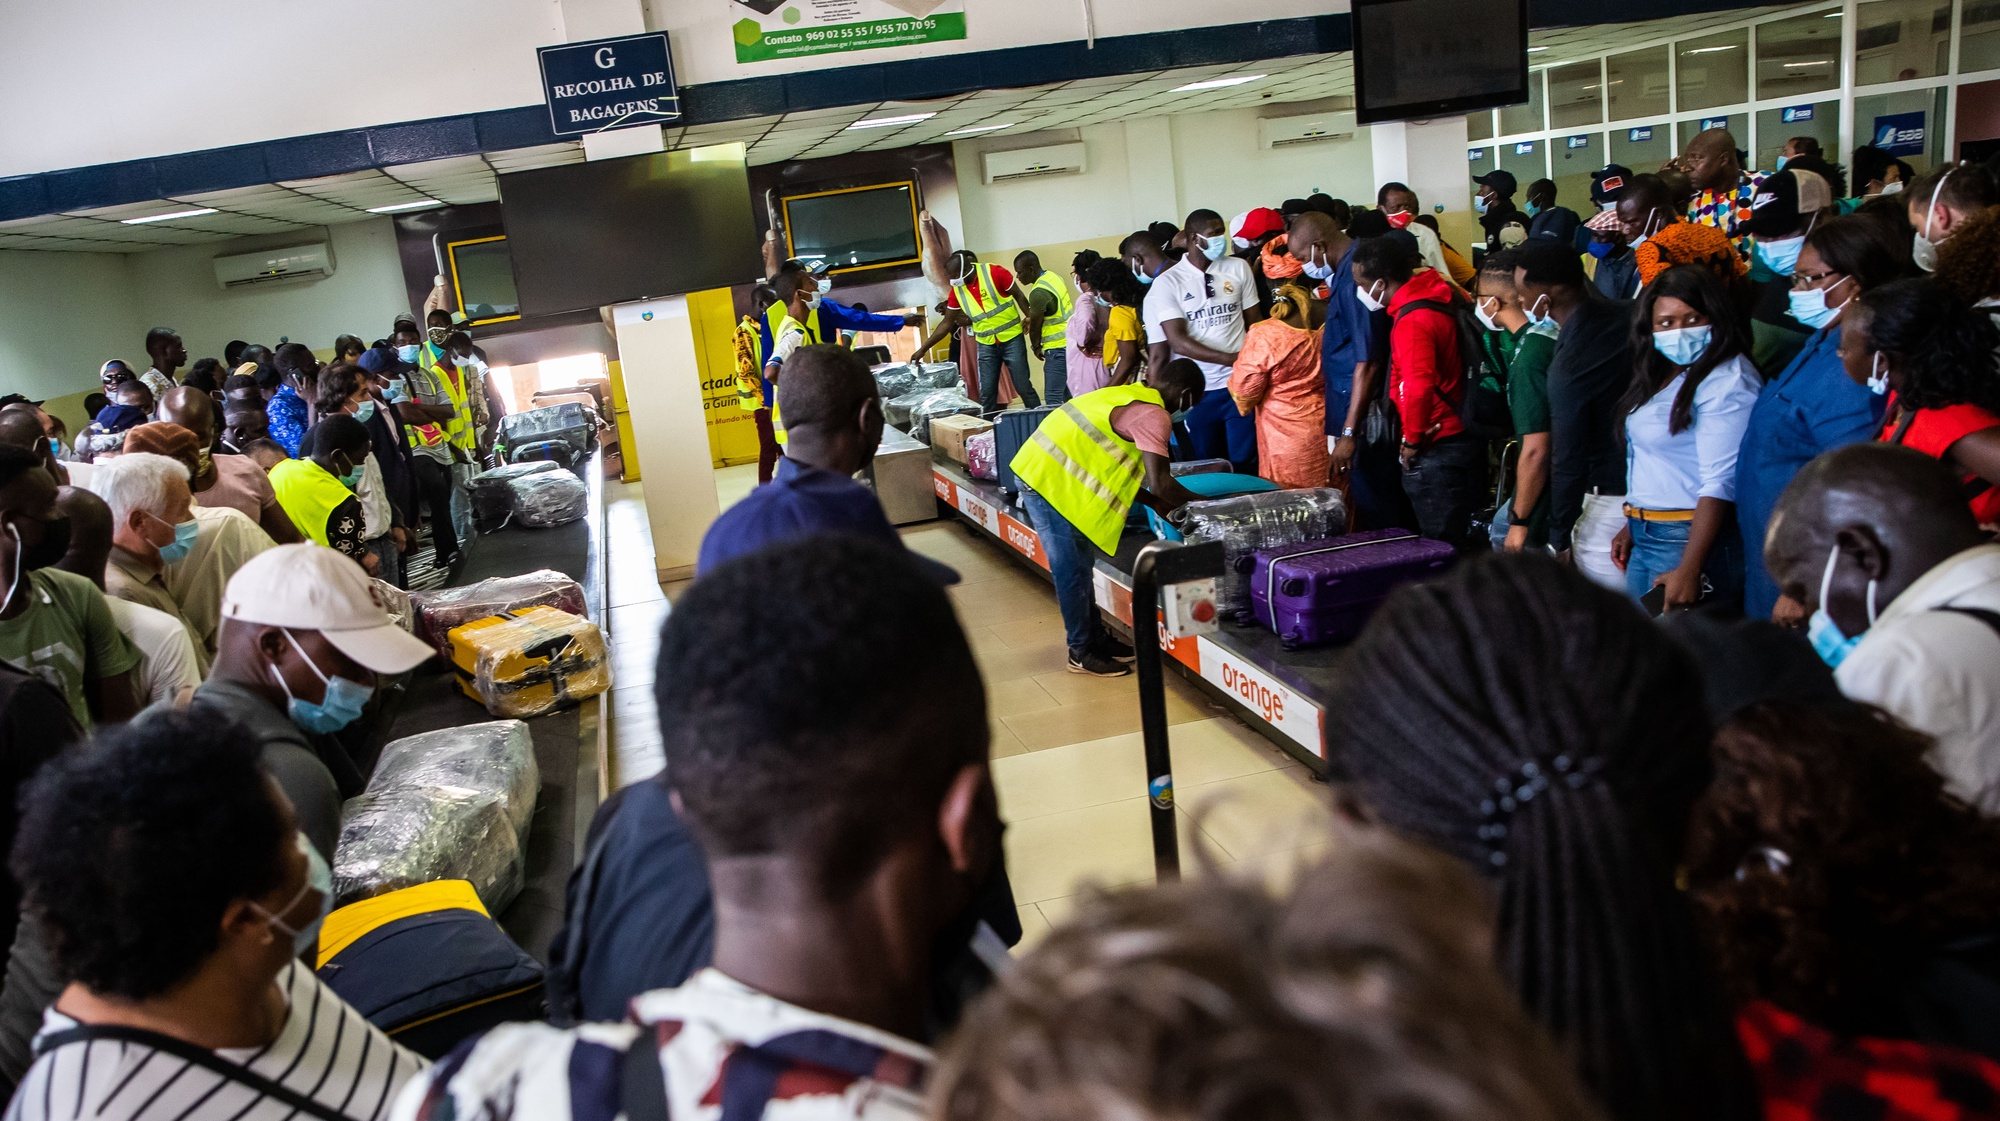 Passageiros aguardam as suas malas no tapete rolante à chegada ao Aeroporto Internacional Osvaldo Vieira, em Bissau, na Guiné-Bissau, 16 de maio de 2021. JOSÉ SENA GOULÃO/LUSA